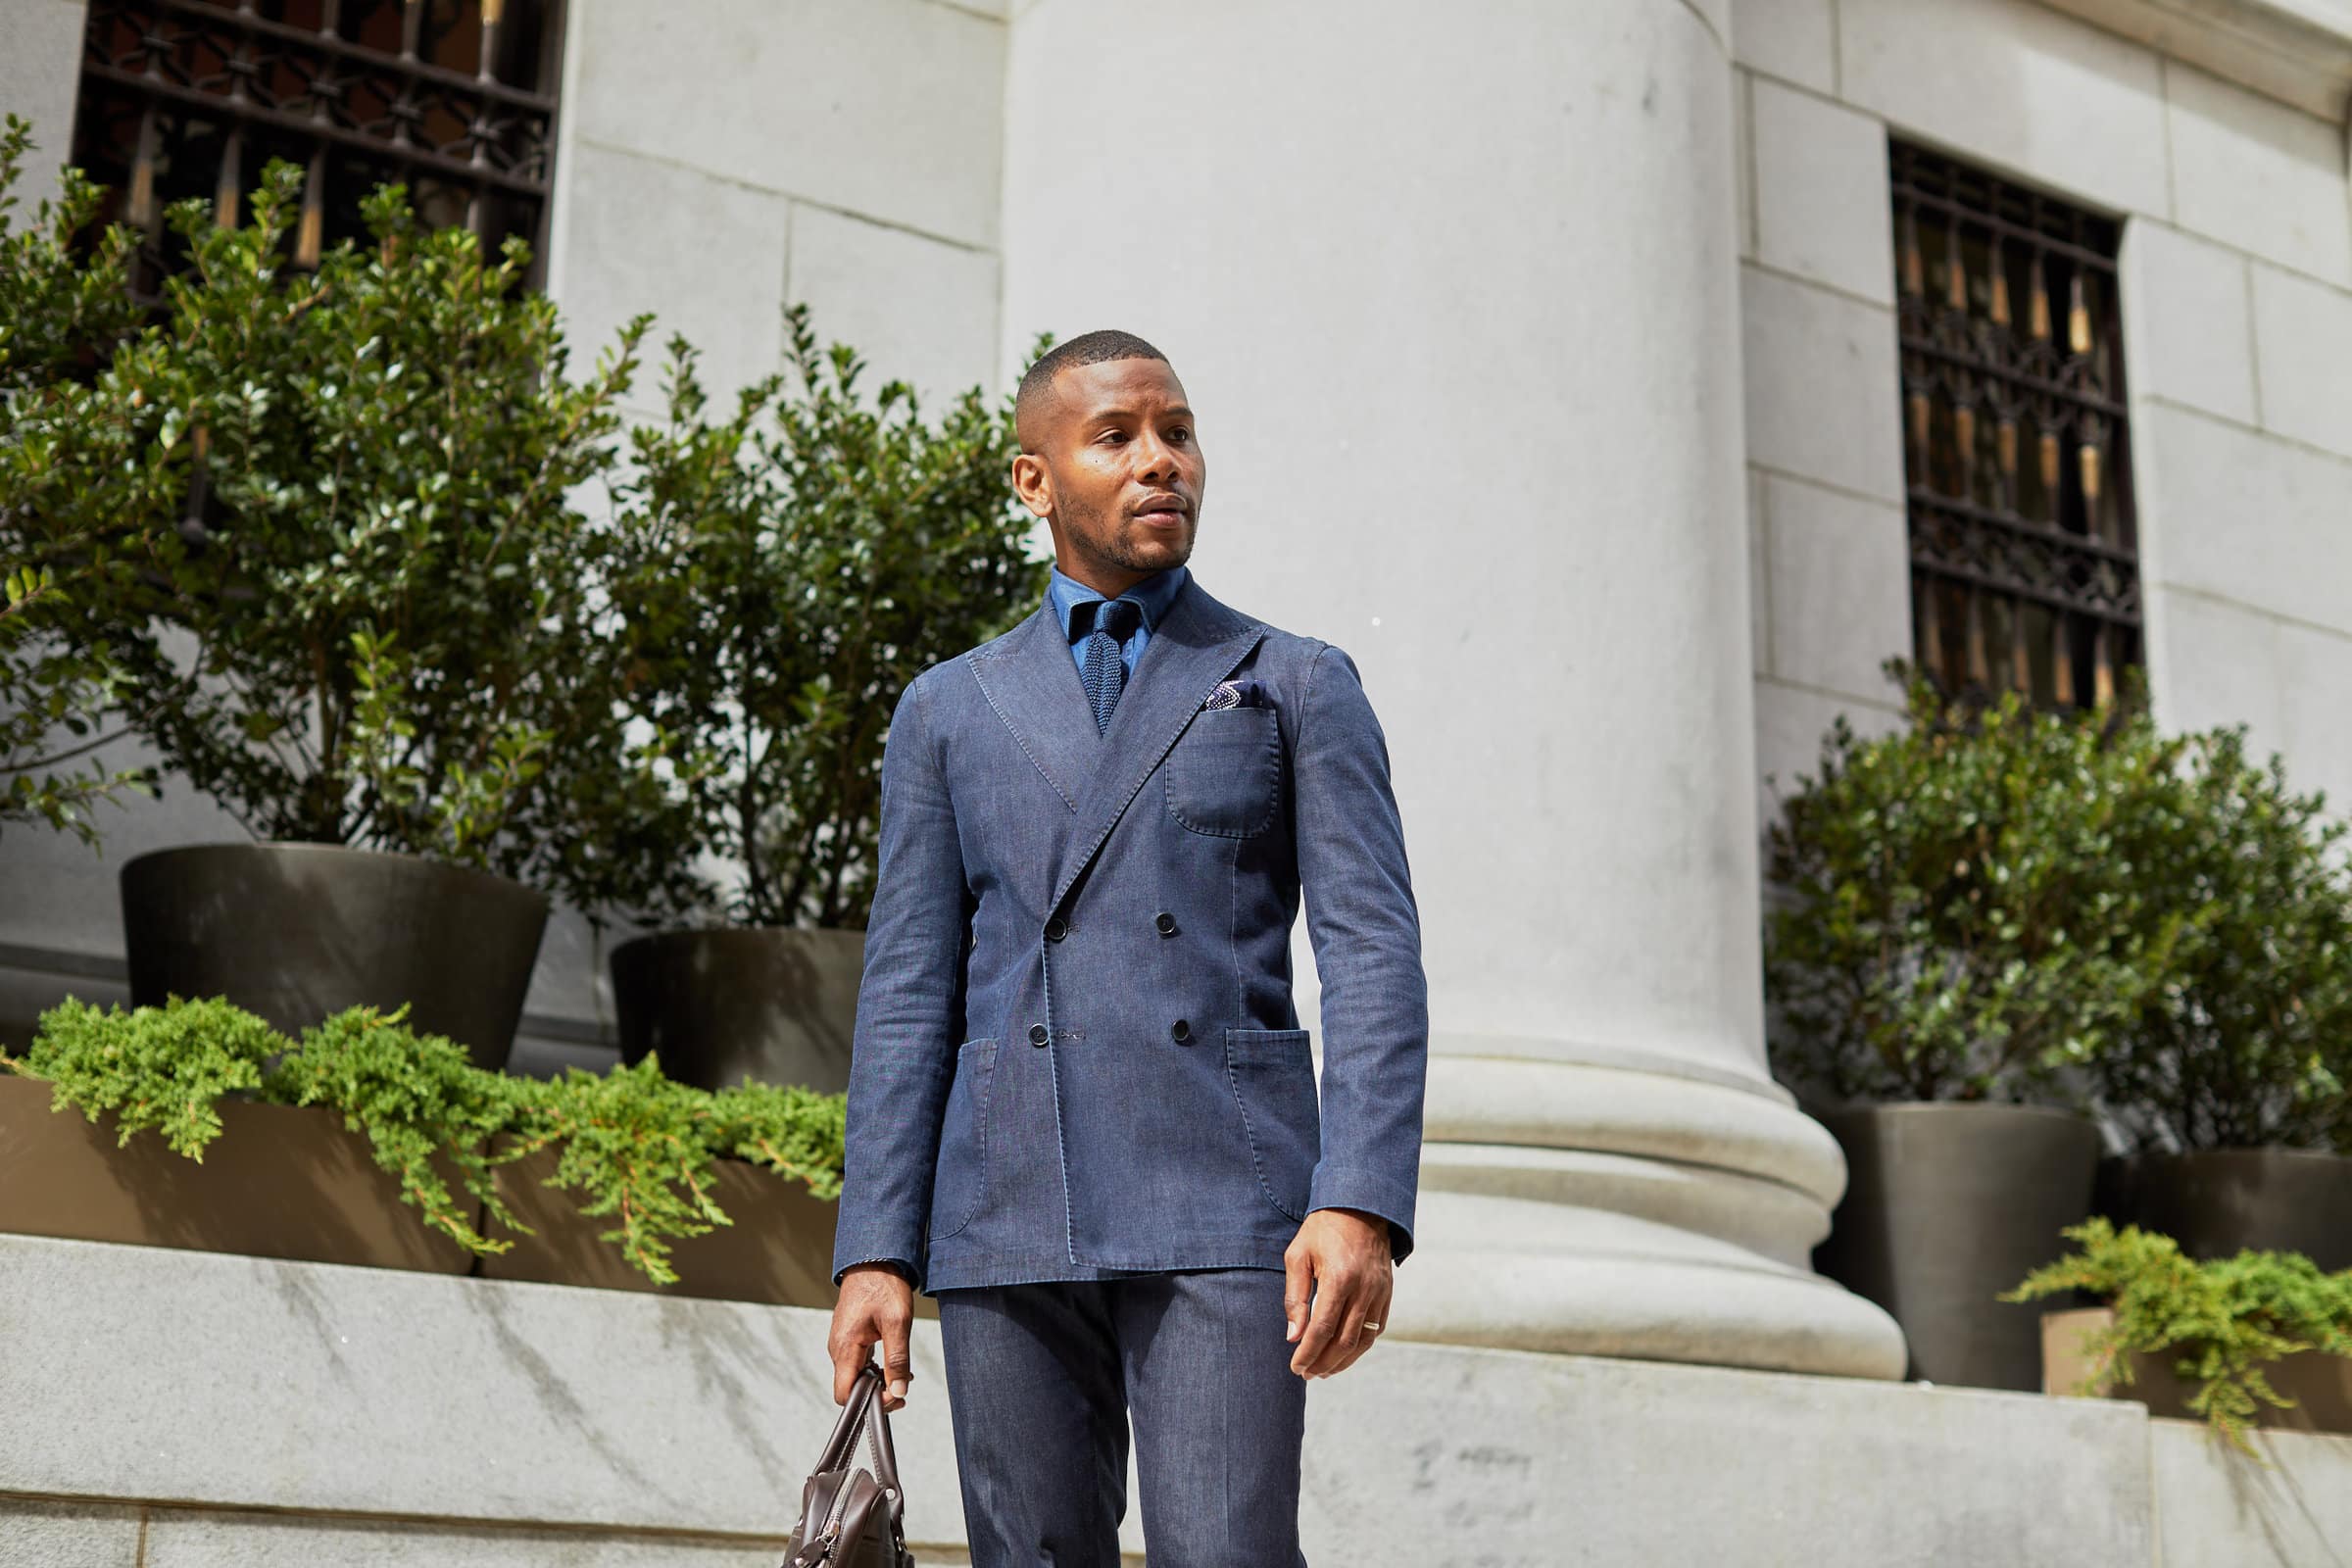 ModaMatters Denim Suit on Men's Style Pro